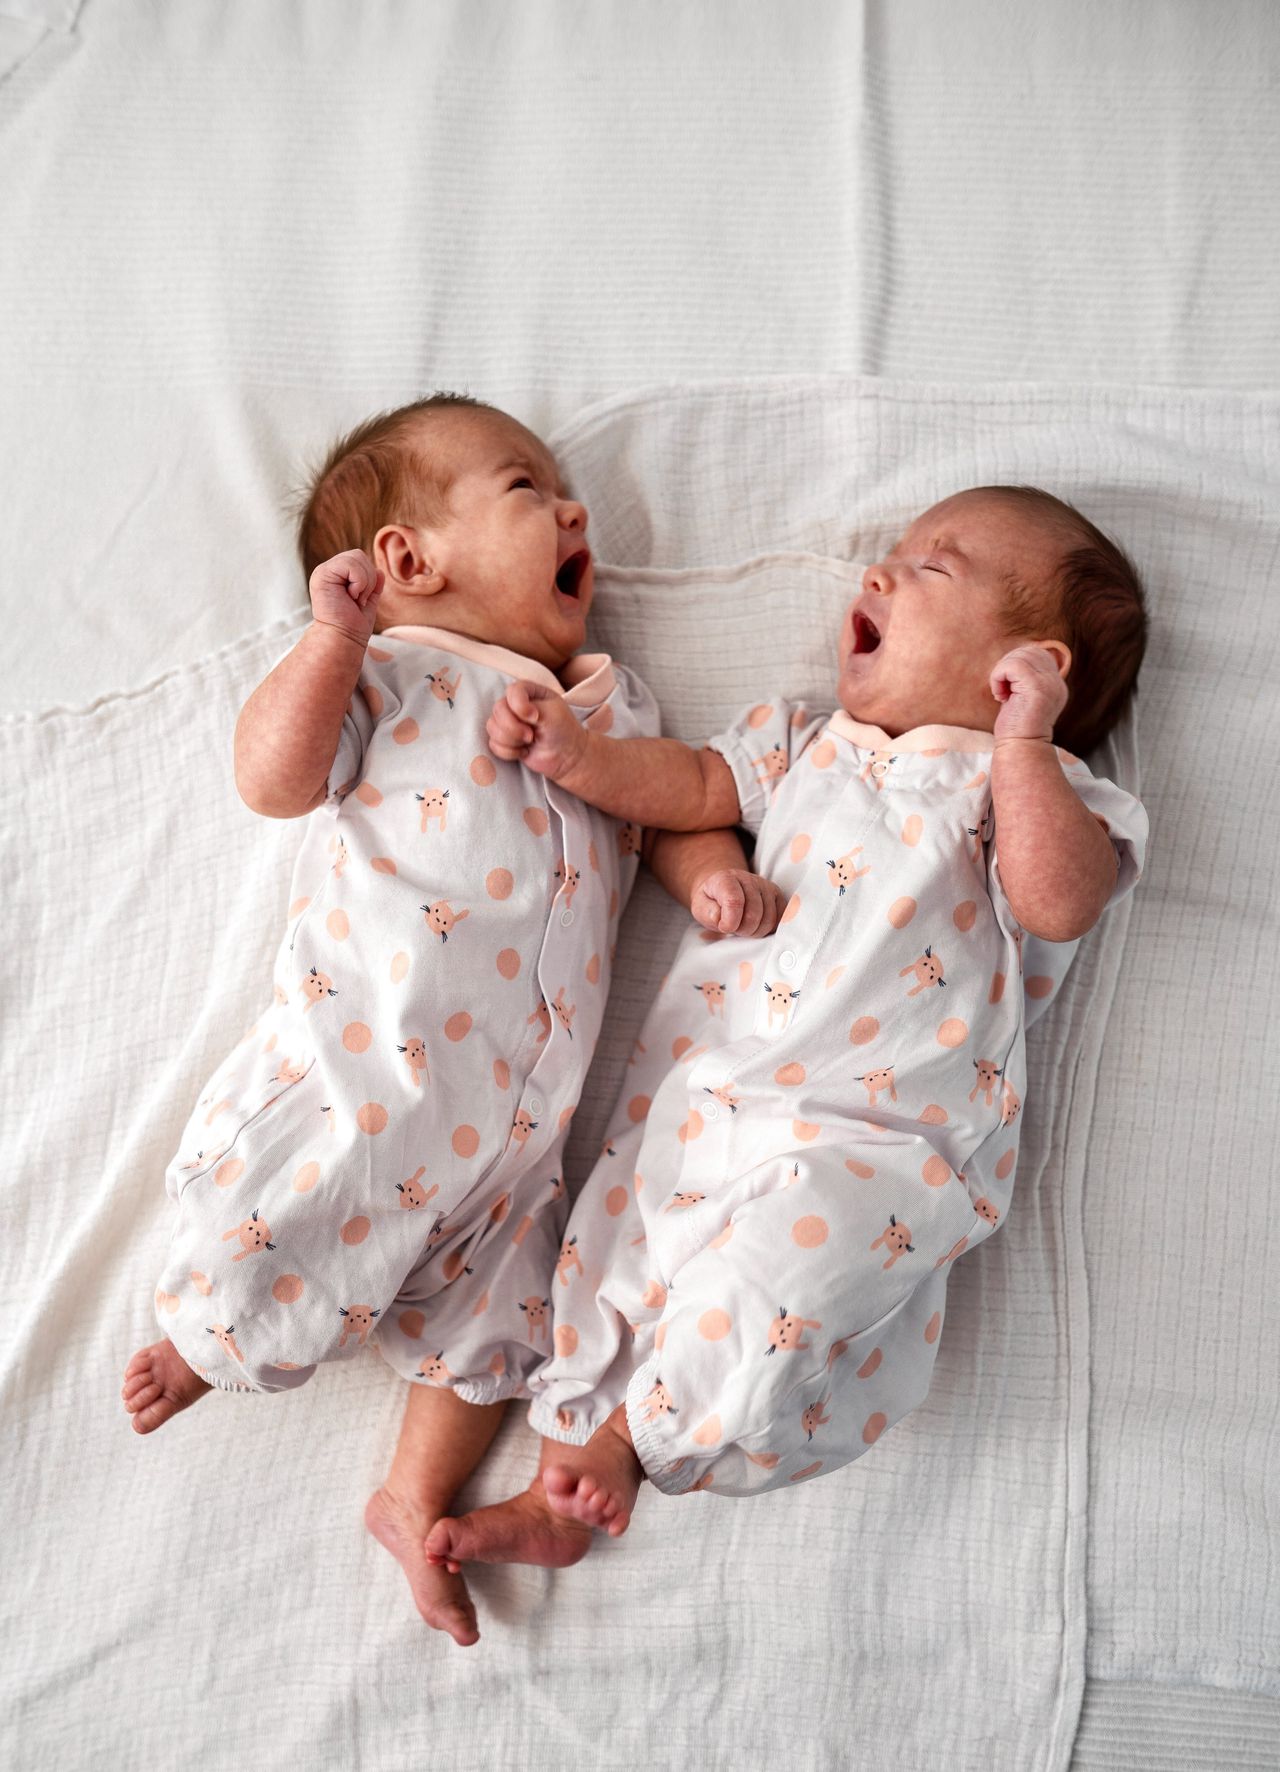 Onderzoek naar levensloop van eeneiige tweelingen is een manier om invloed van omgeving te scheiden van die van erfelijke factoren.